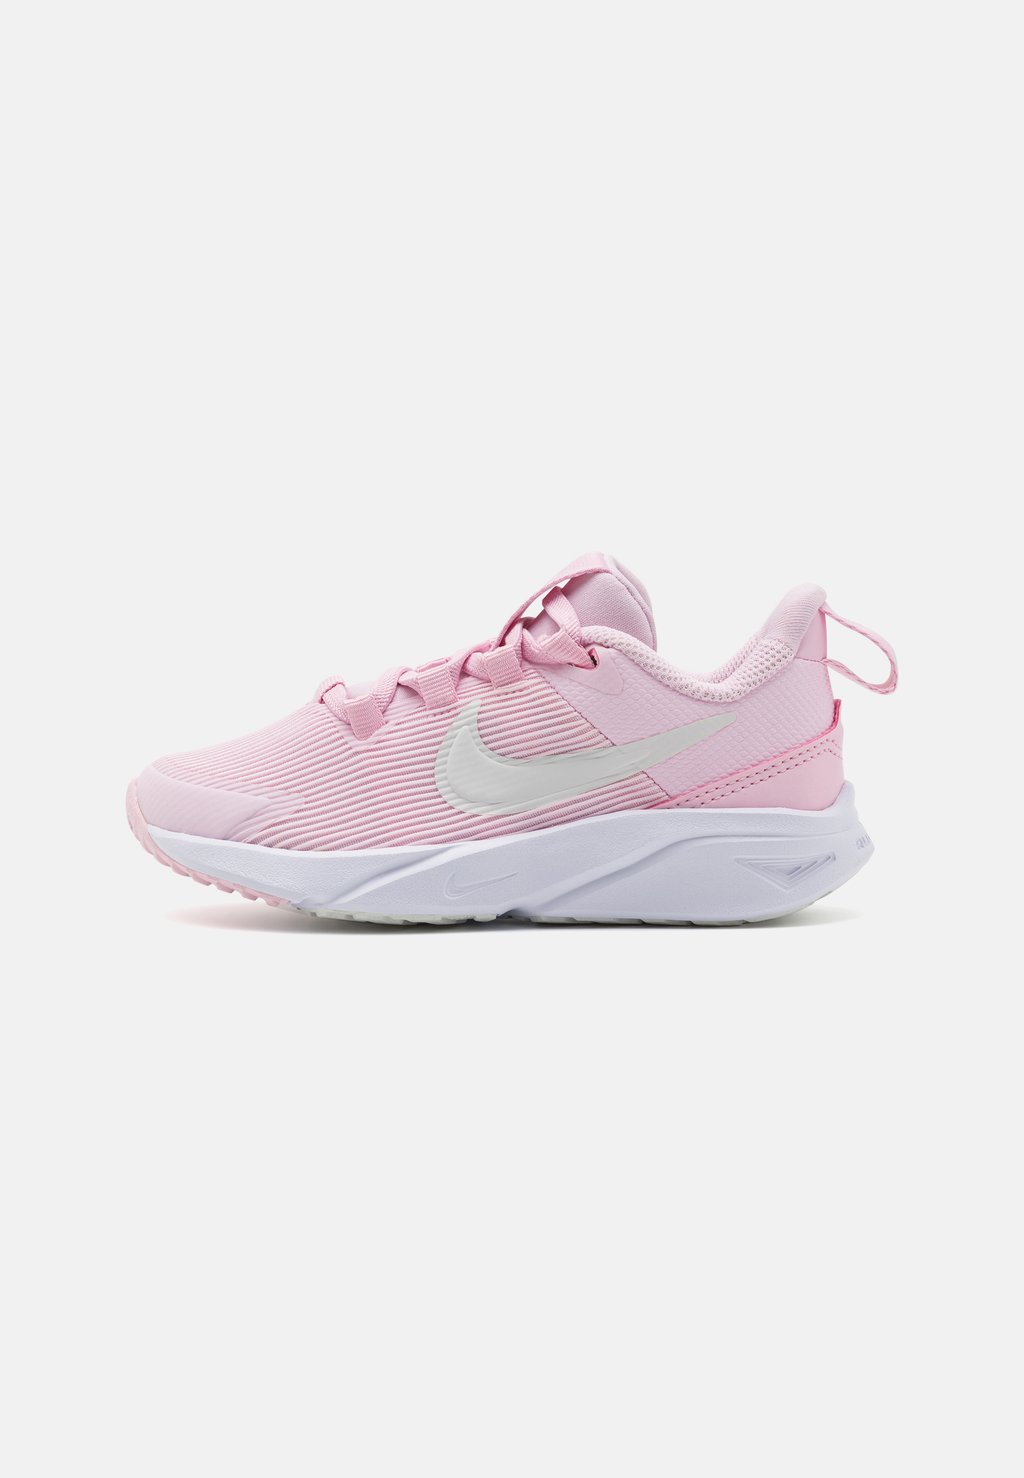 Кроссовки нейтрального цвета Star Runner 4 Unisex Nike, цвет pink foam/summit white/white